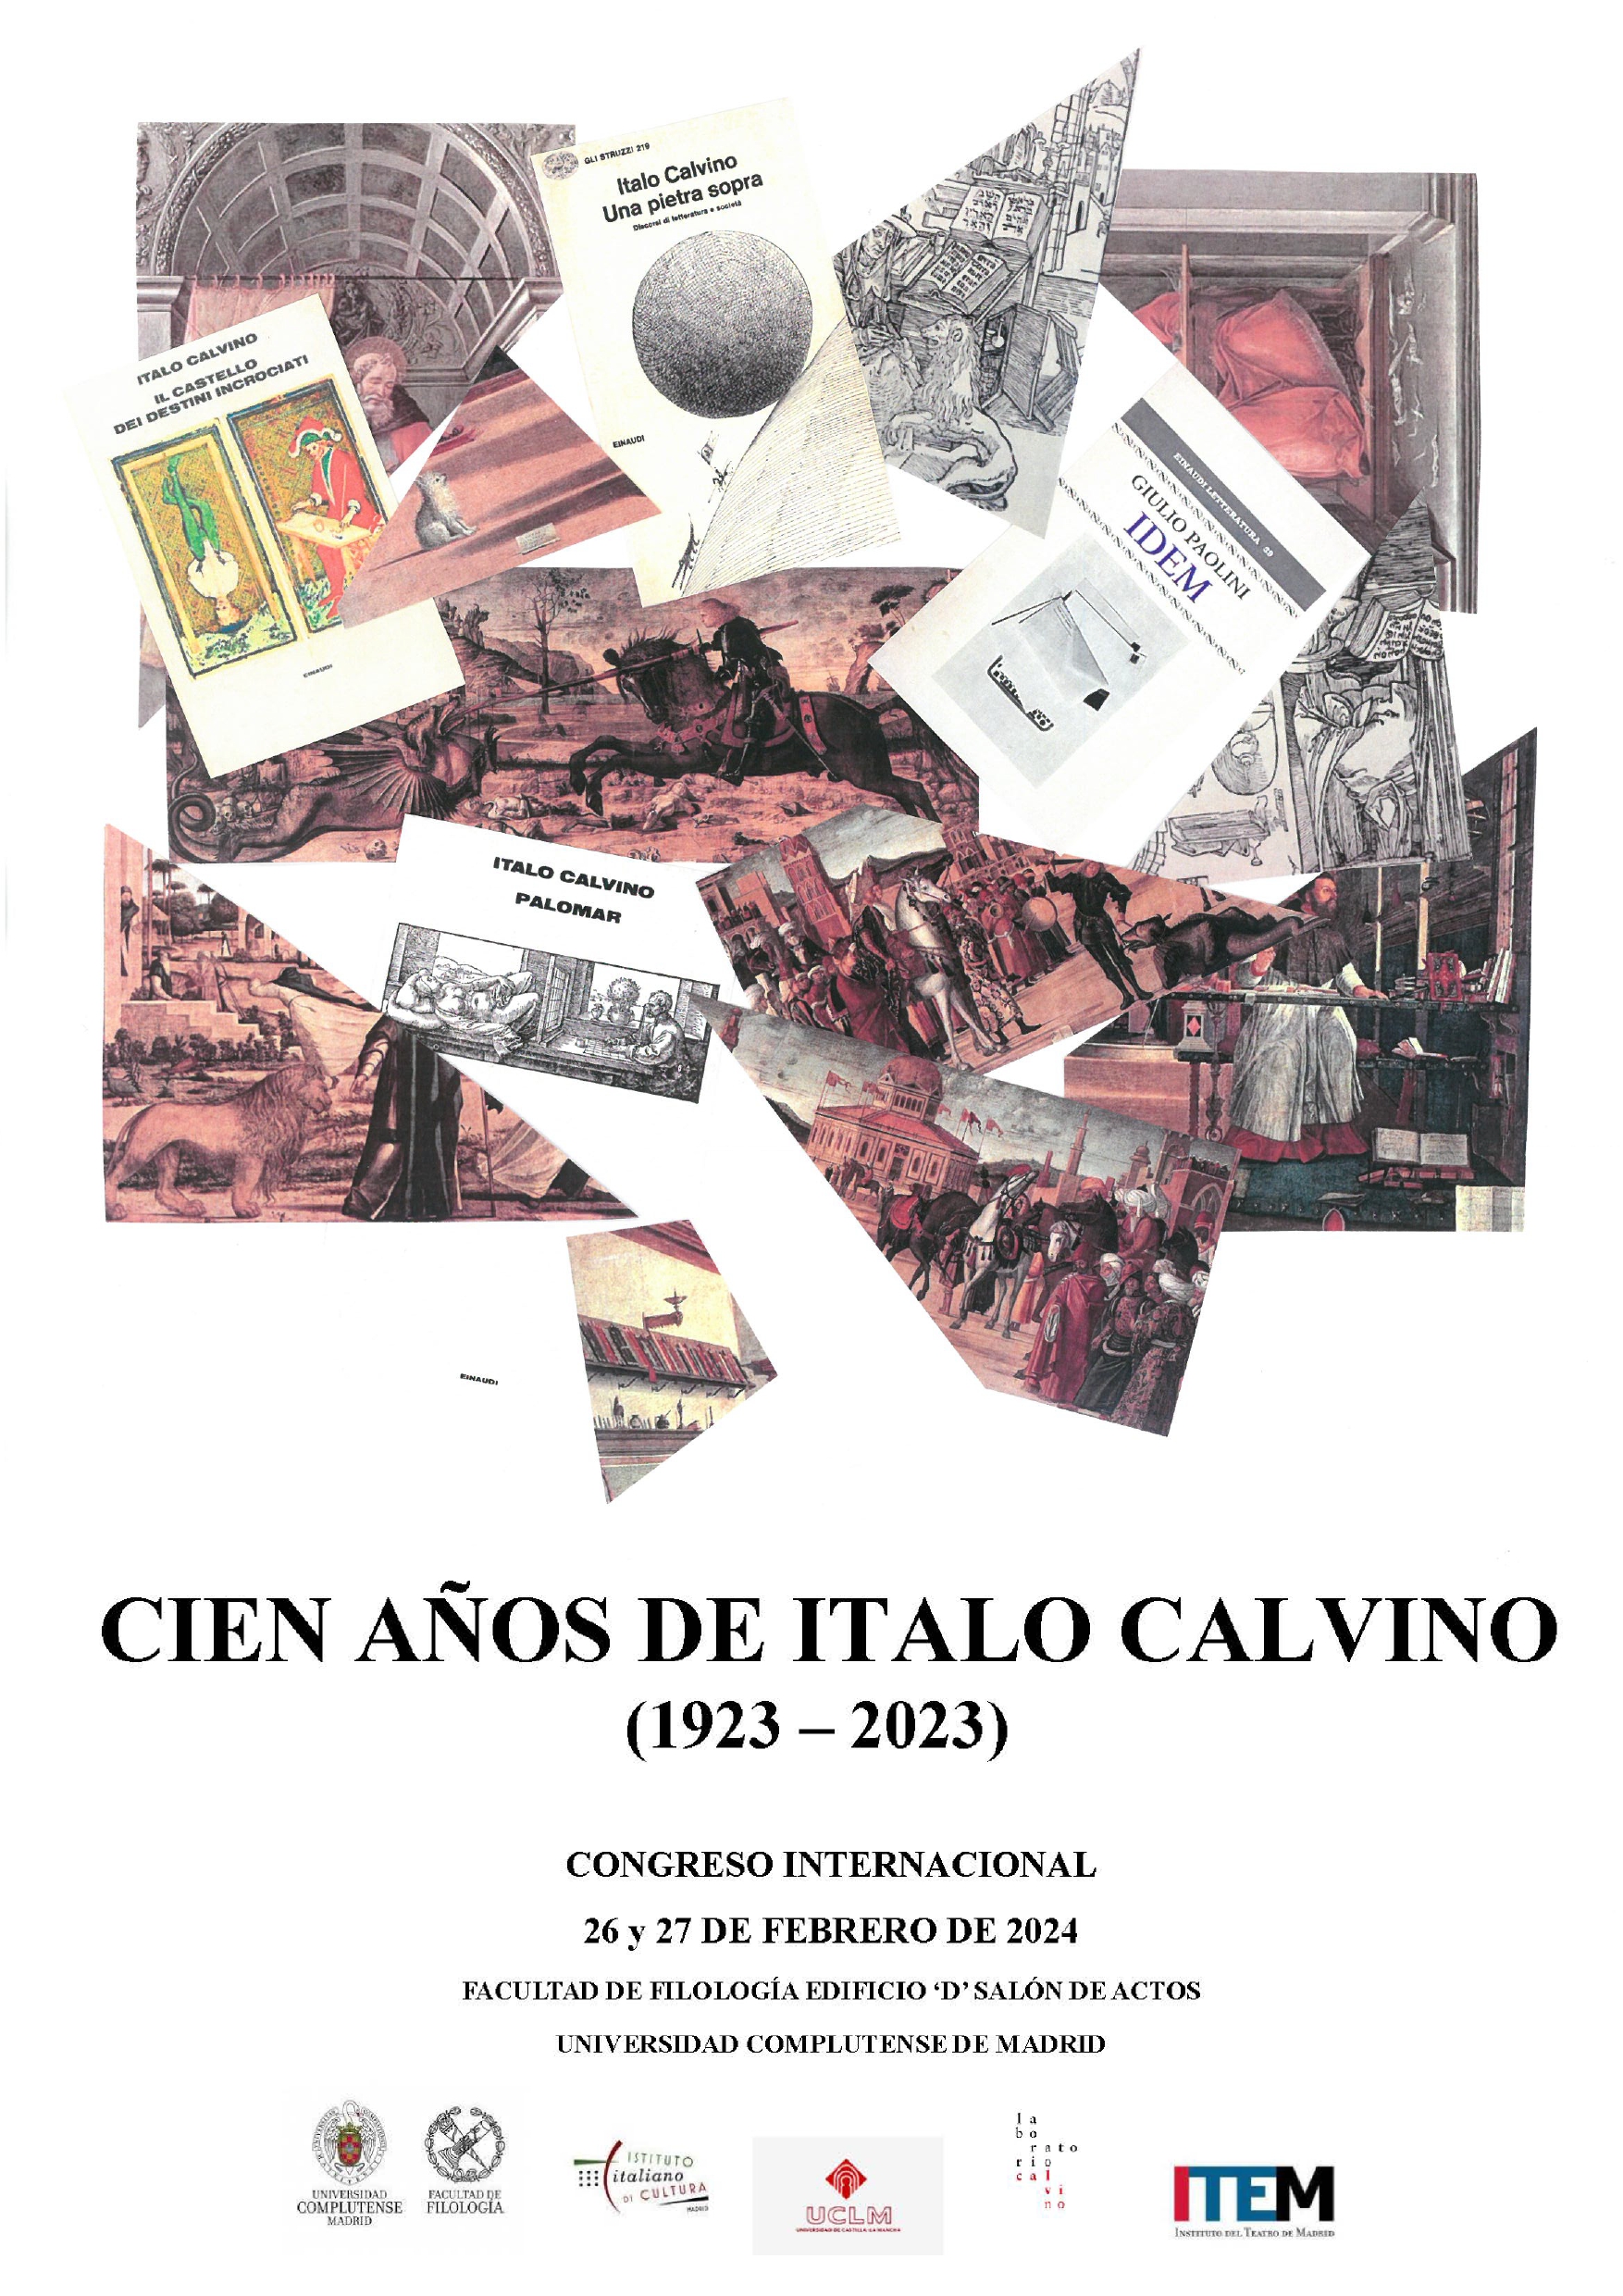 Congreso Internacional Cien años de Italo Calvino